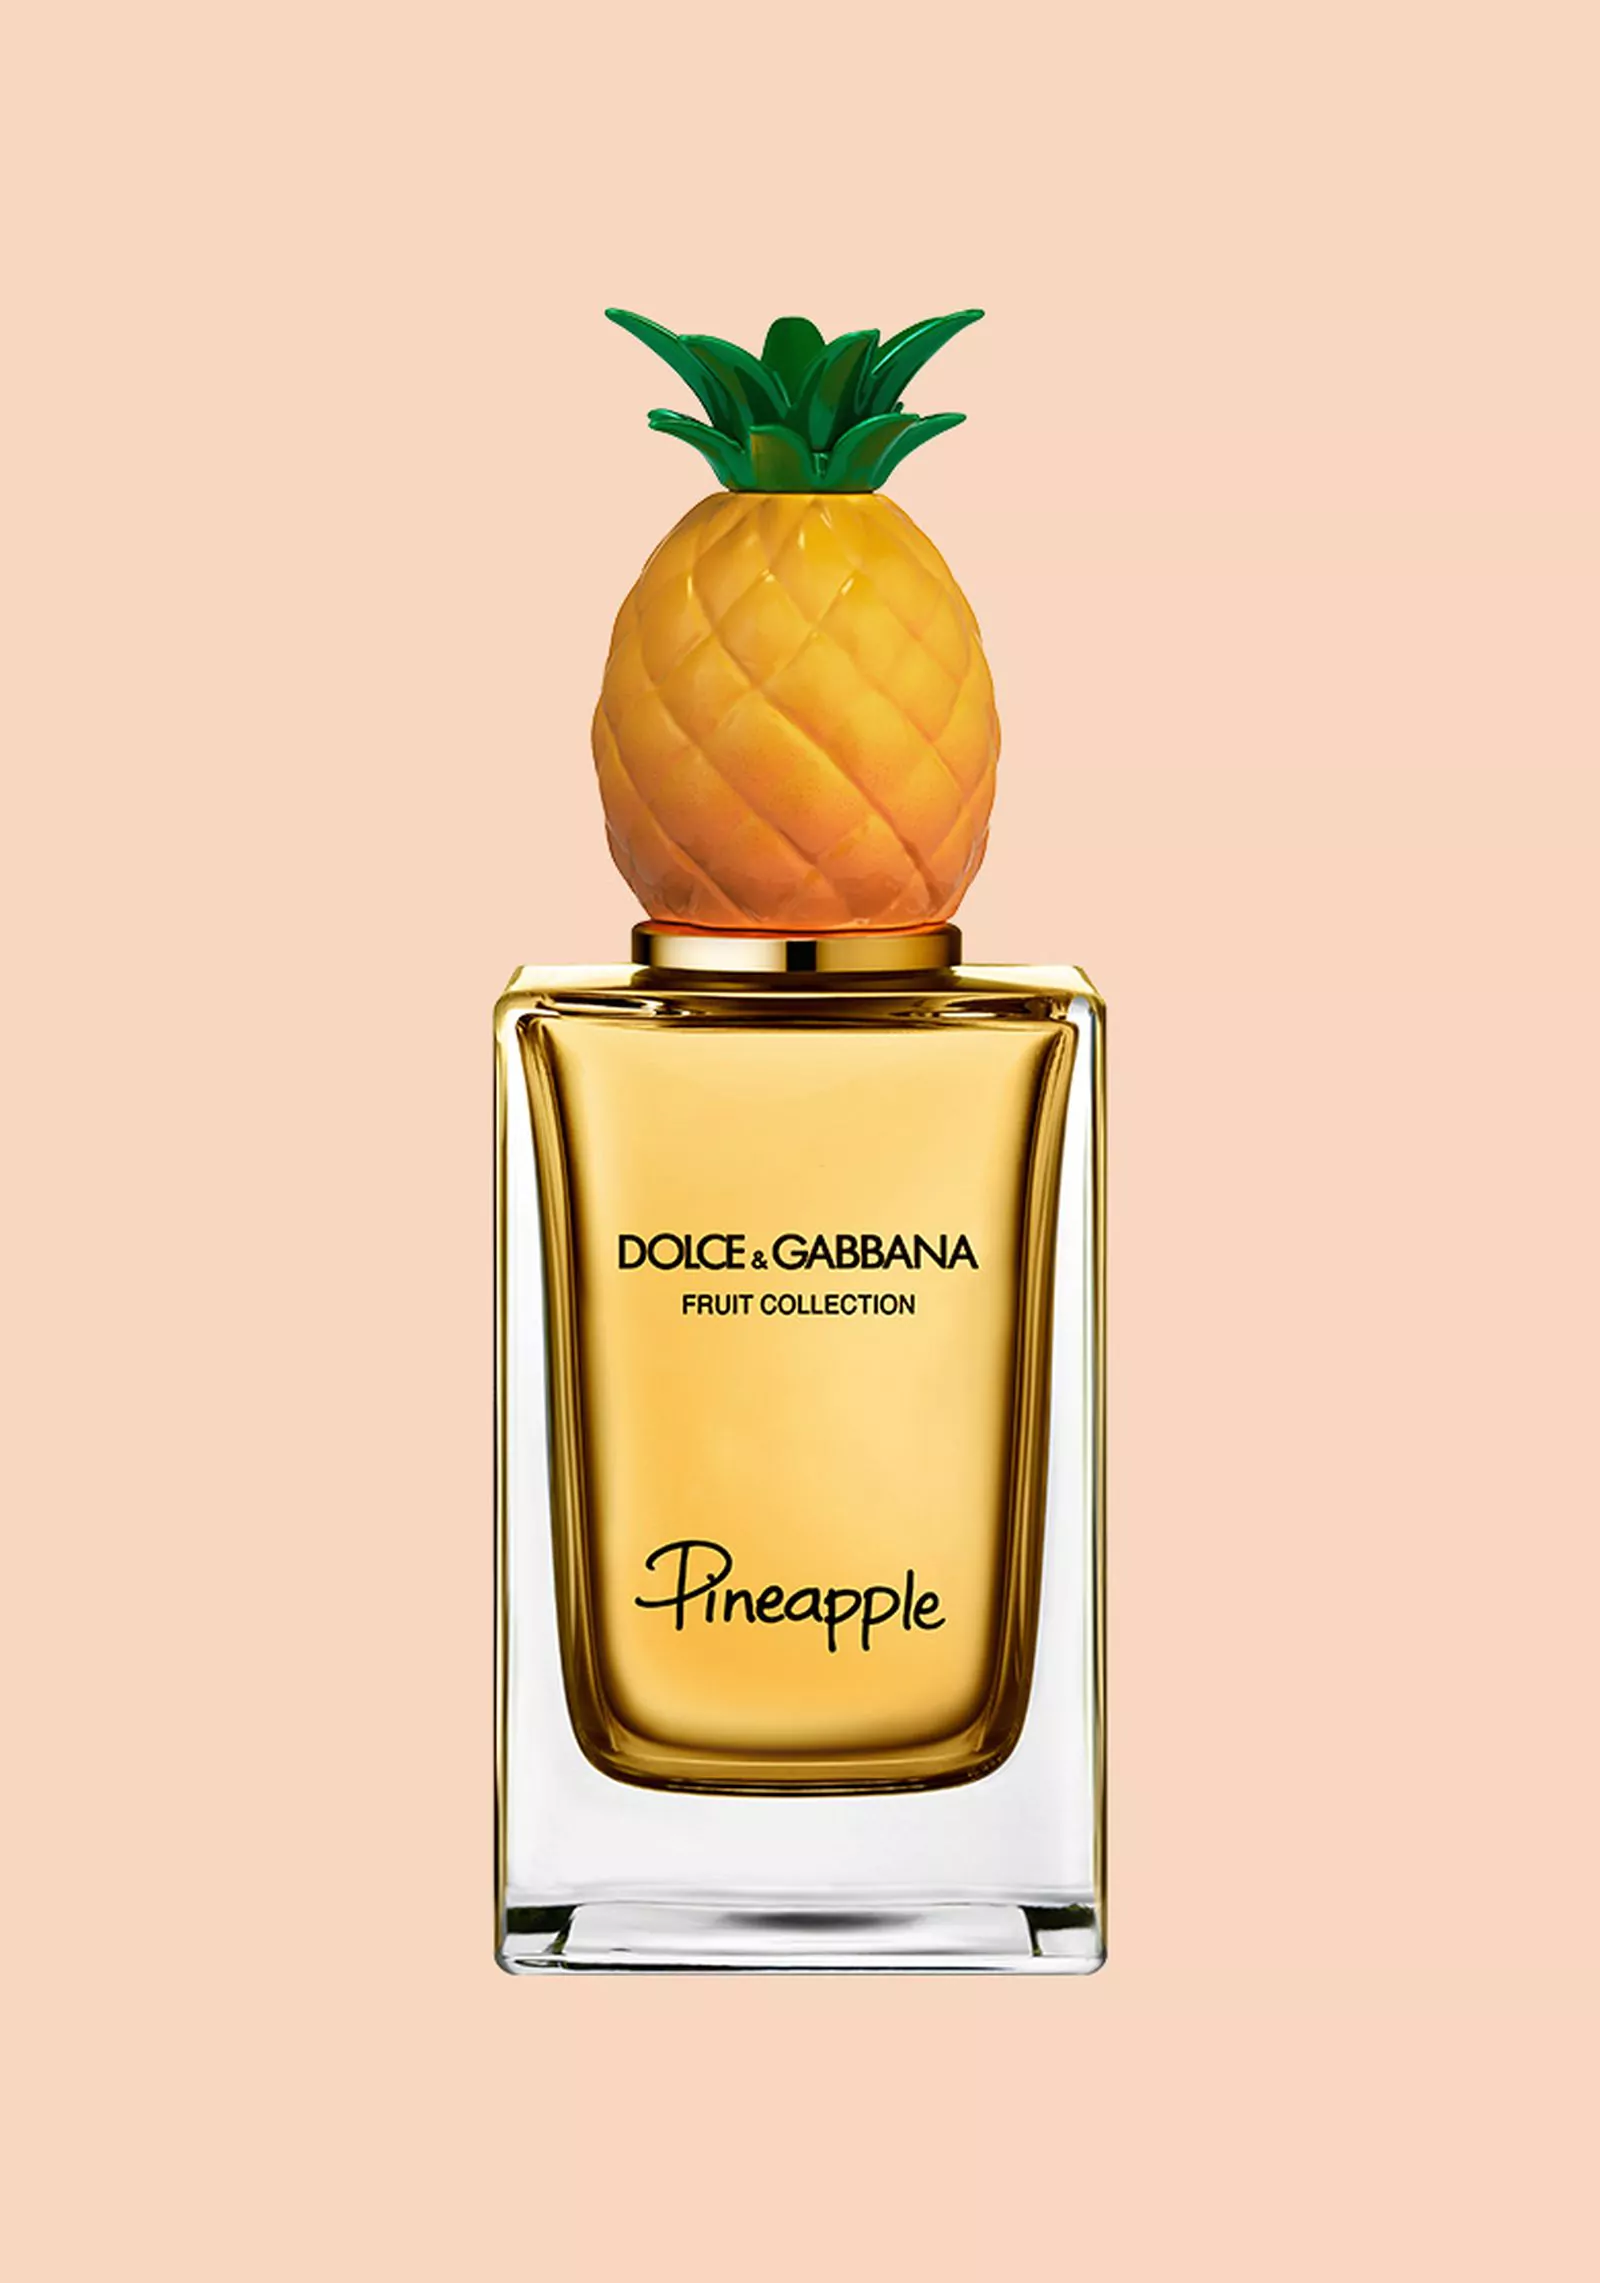 Dolce&Gabbana, Pineapple